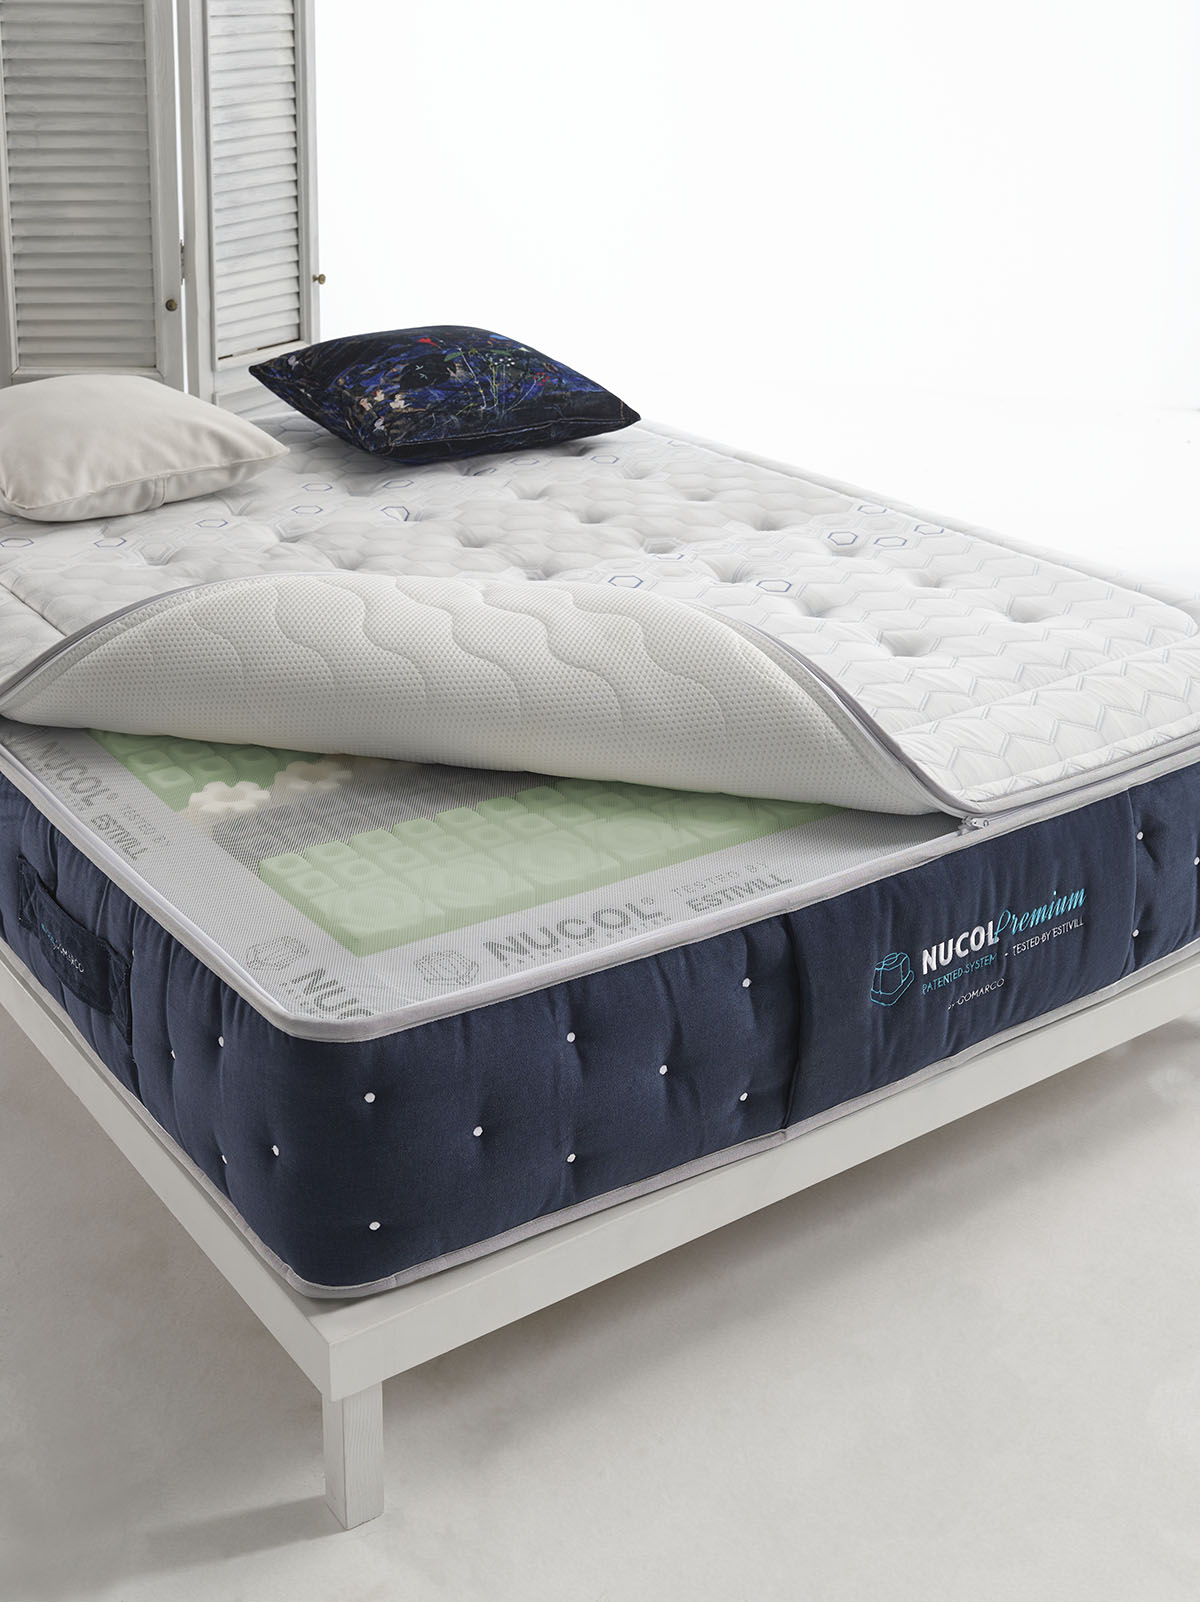 gomarco-nucol-premium-mattress